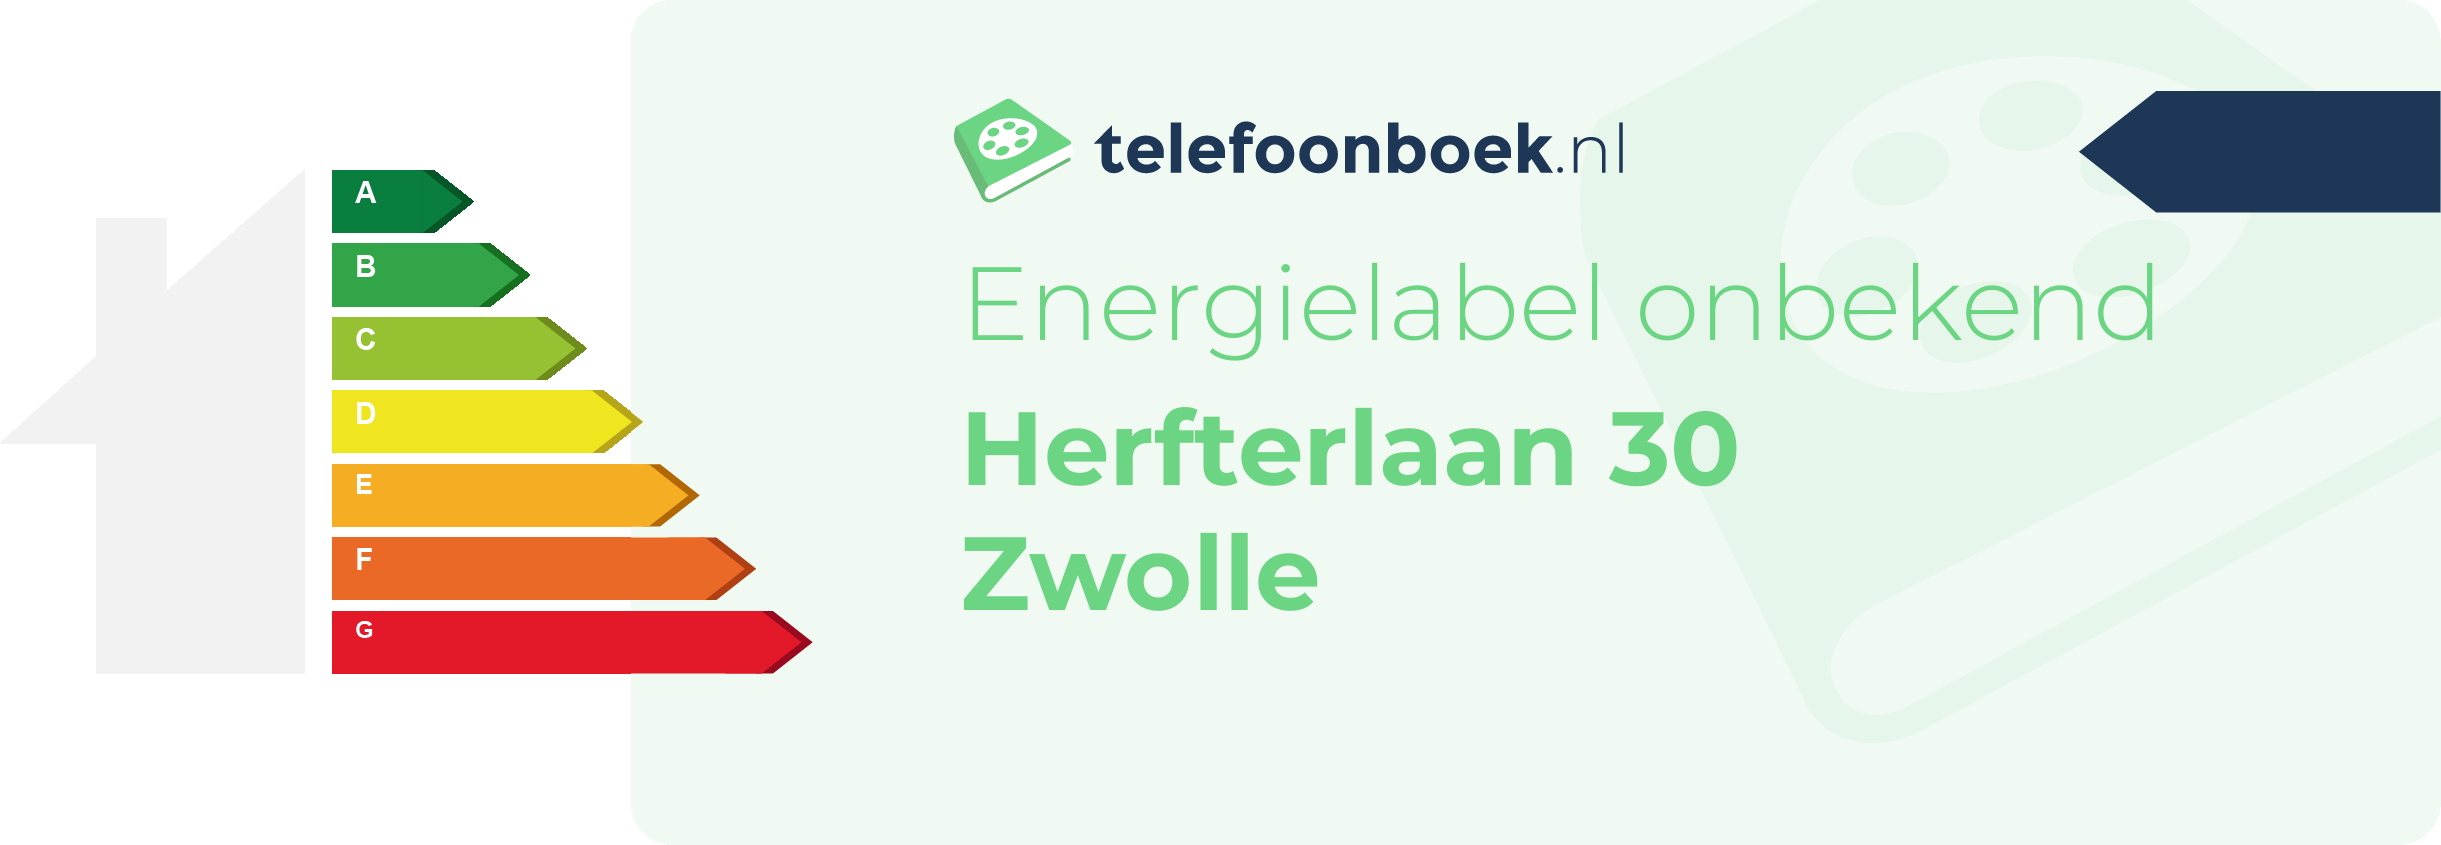 Energielabel Herfterlaan 30 Zwolle